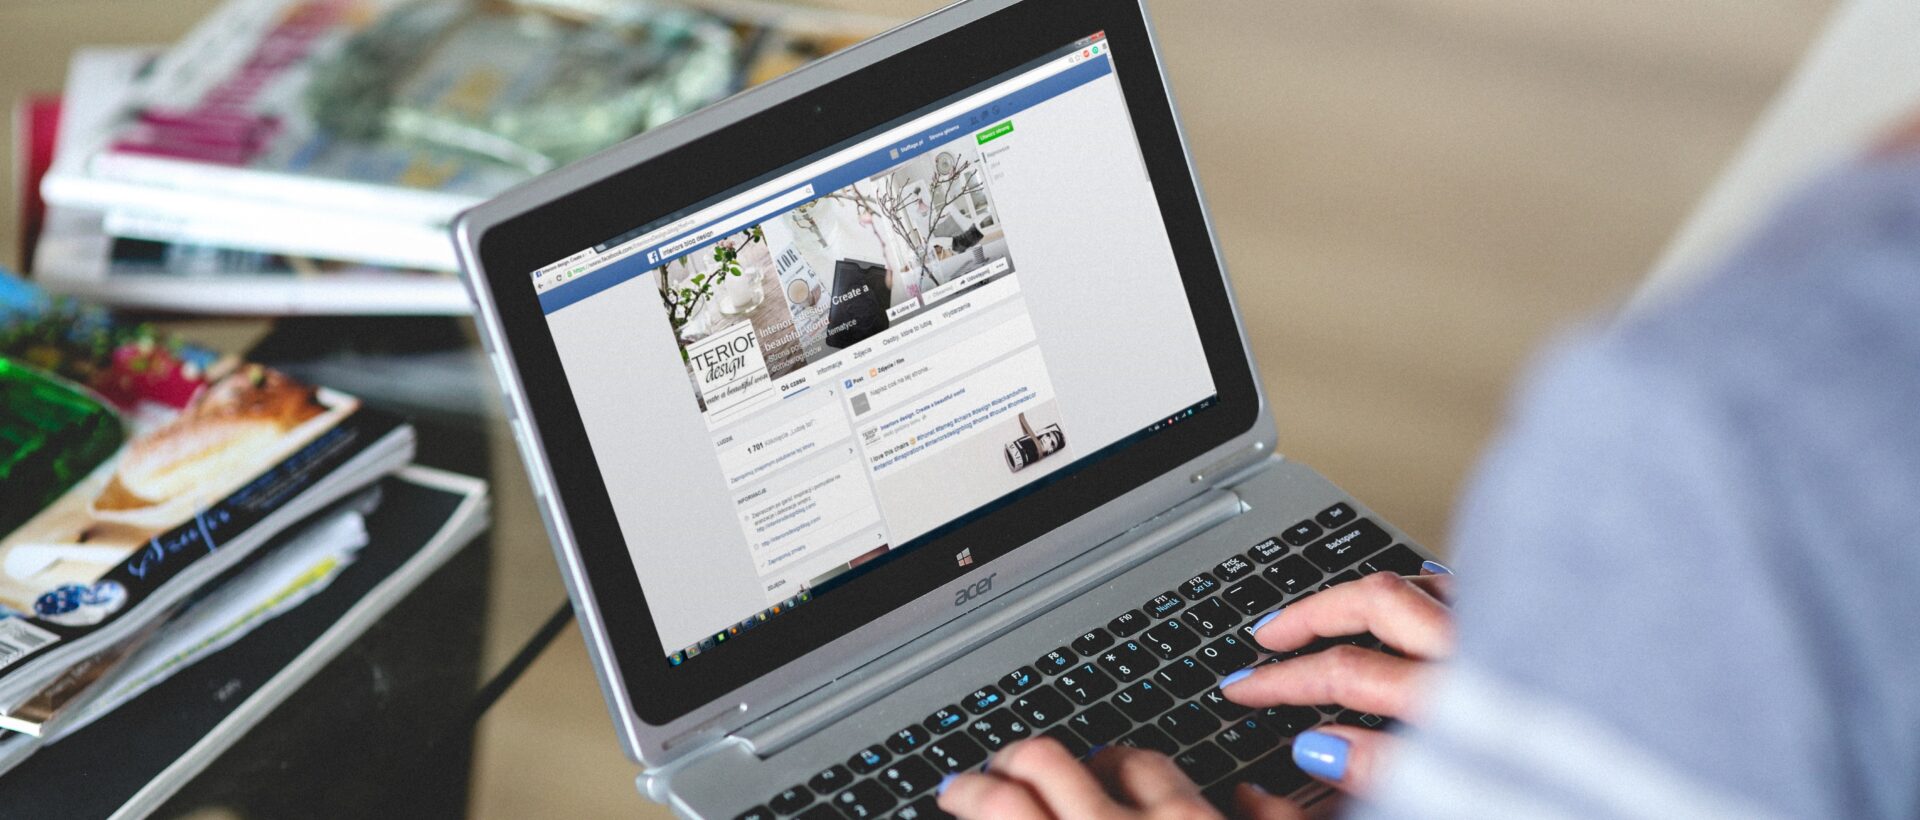 laptop auf knien, facebook seite offen